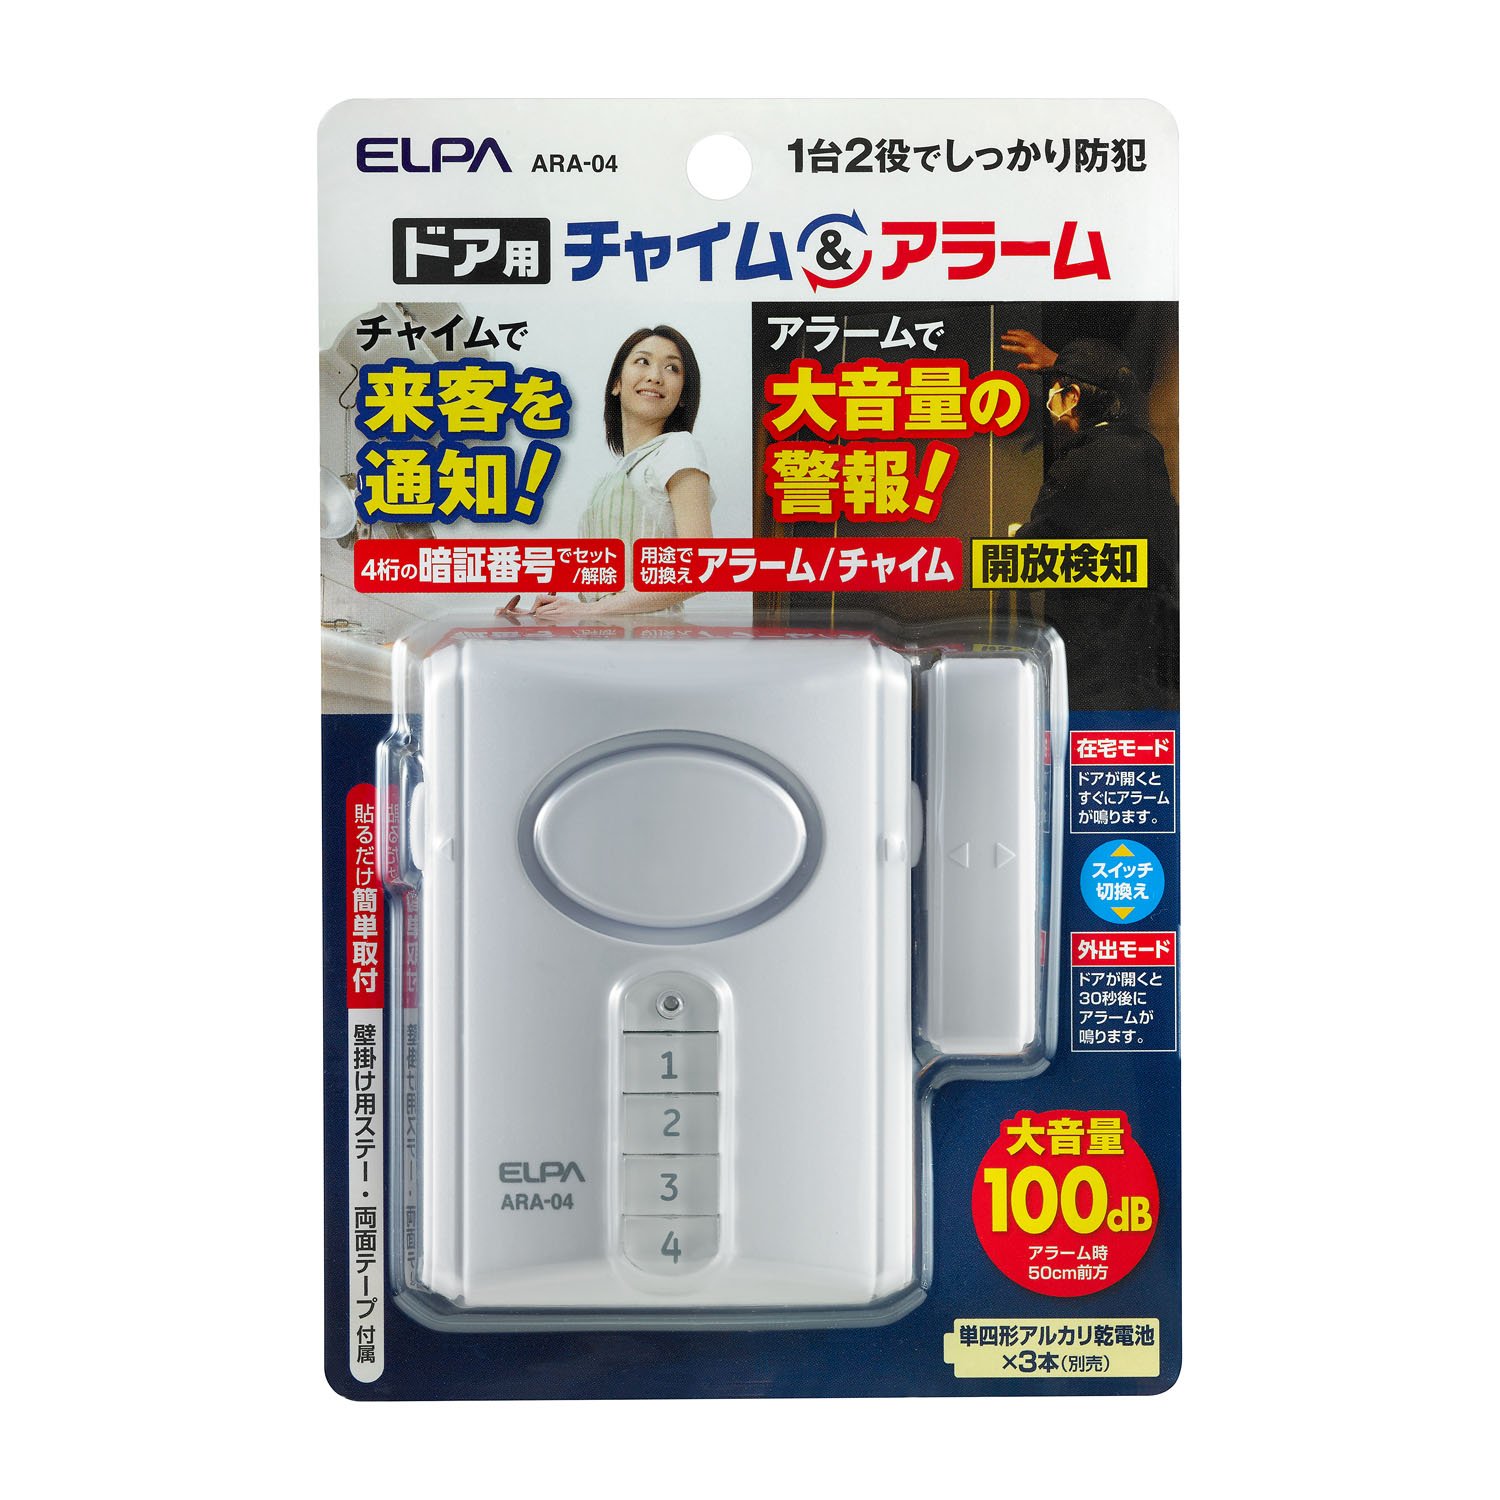  Elpa (ELPA) дверь для звонковое устройство and сигнализация вход звонковое устройство сигнализация примерно 100db/50cm звонковое устройство примерно 85db/50cm ARA-04